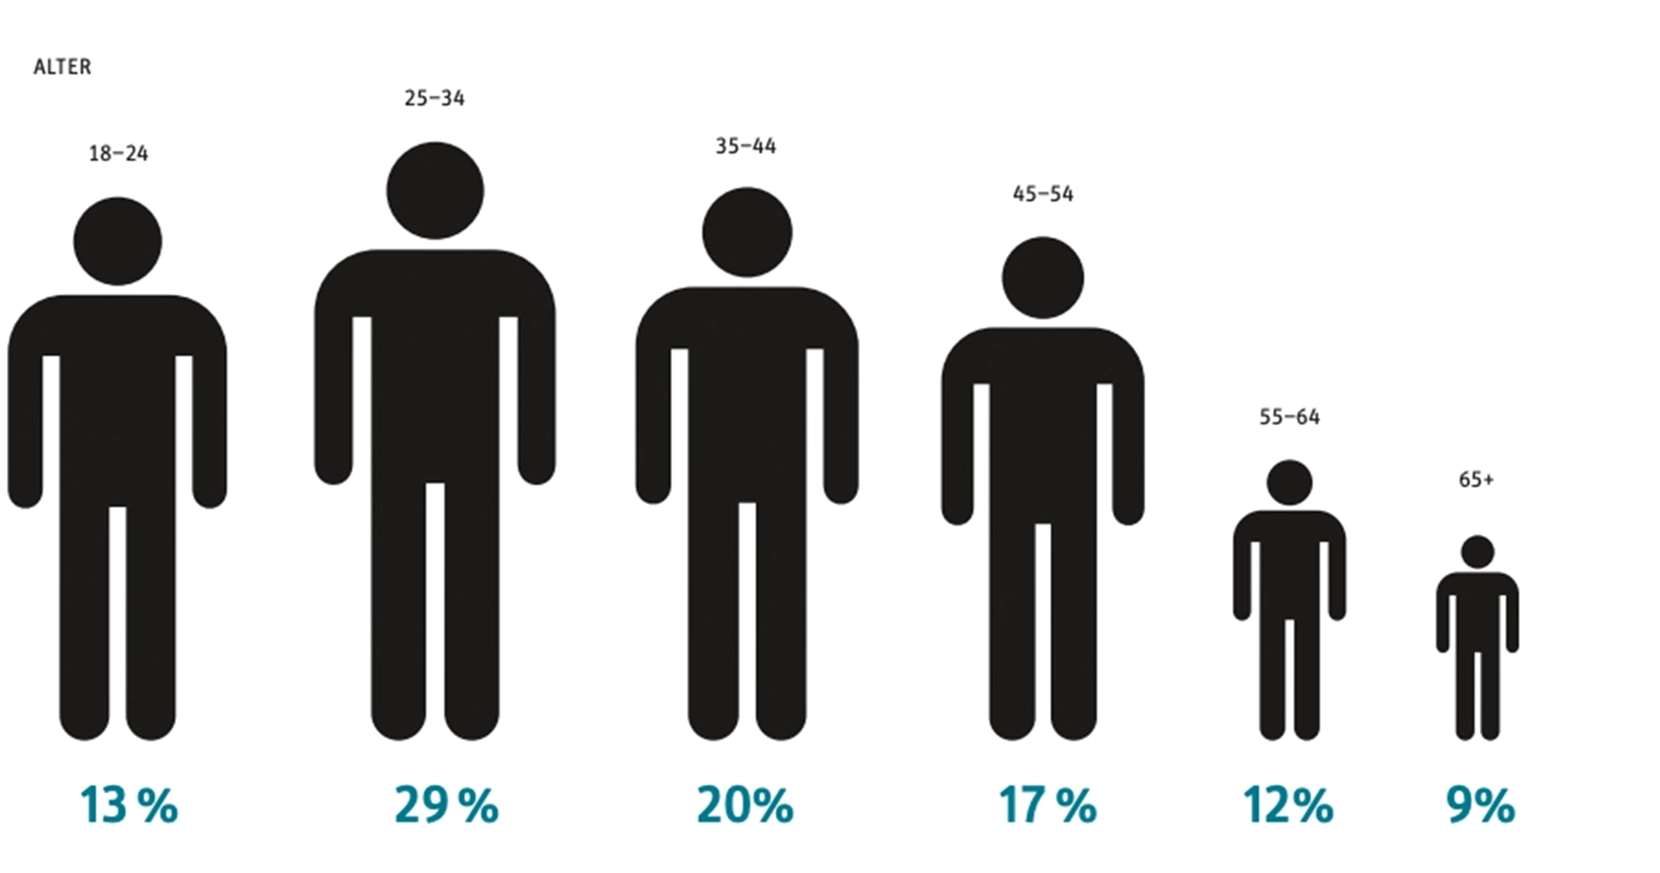 Grafik über die Prozentuale Lesermenge nach Alter sortiert.